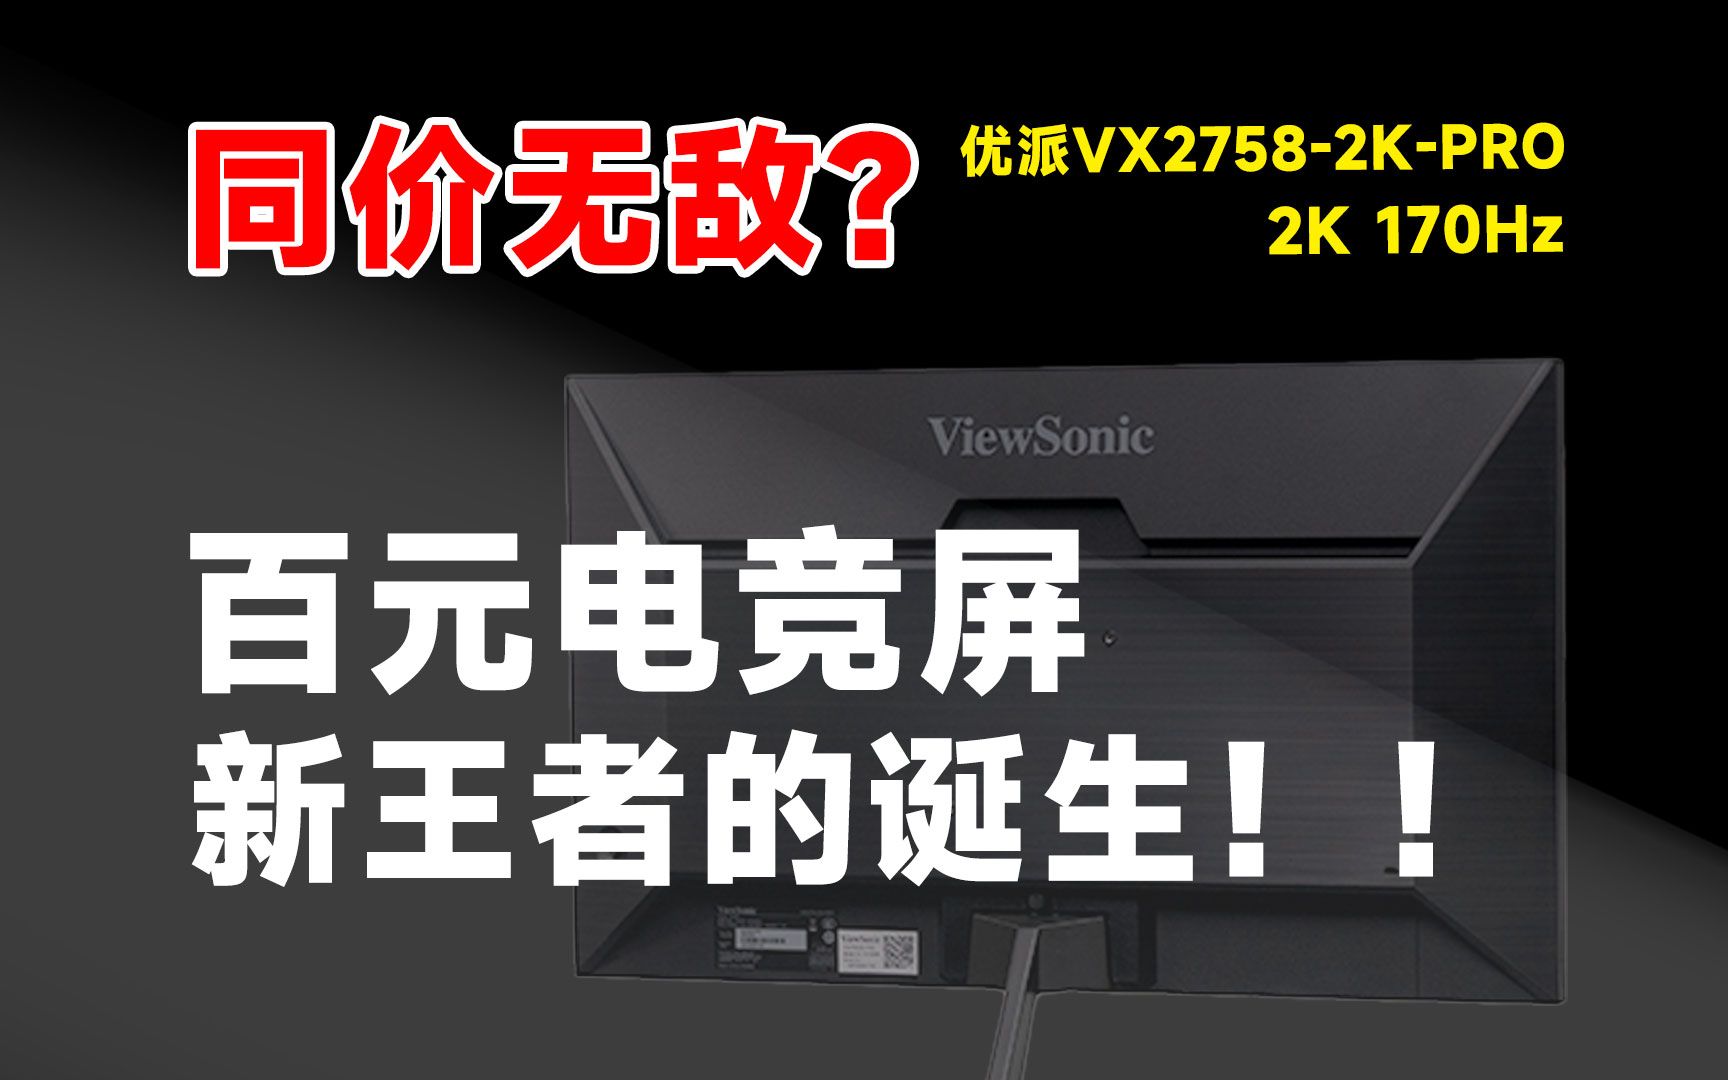 仅售999！2K 170HZ电竞屏的新王者诞生？优派VX2758-2K-PRO显示器，详细测试报告！